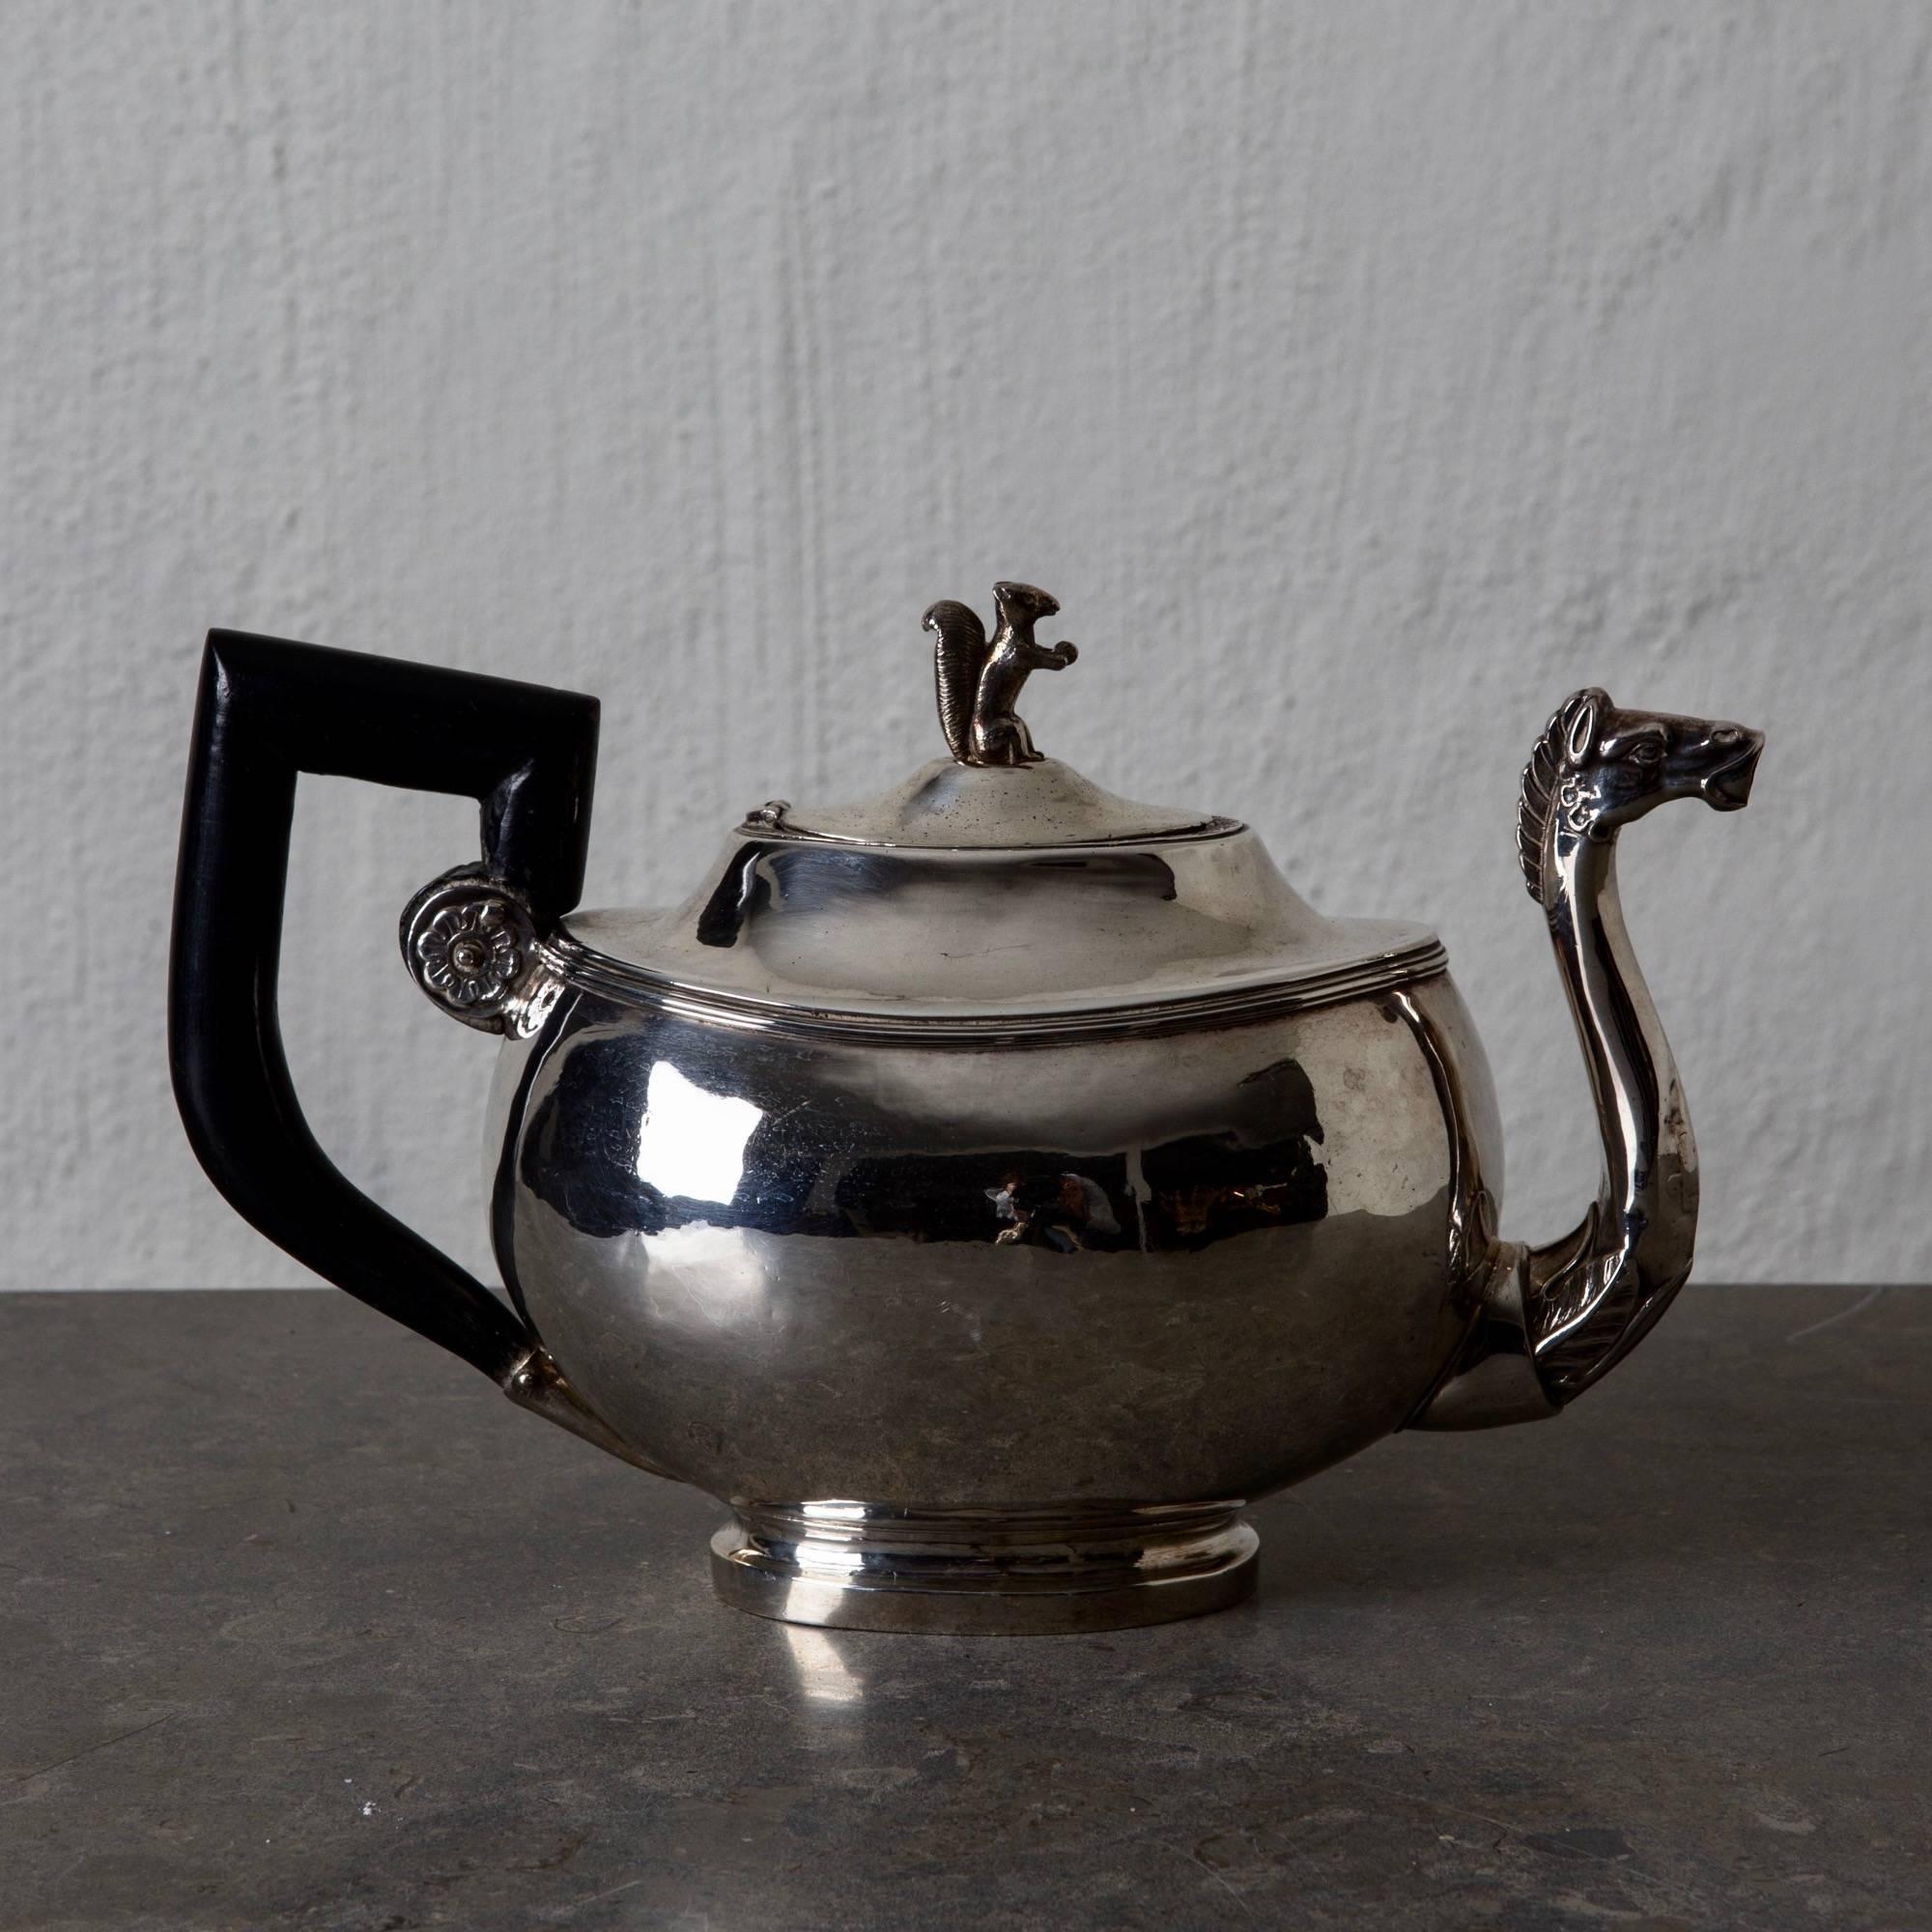 Kaffeekanne Silber Europäische 19. Jahrhundert geschwärzt Griff Österreich. Ein exquisites Beispiel für eine Empire-Kaffeekanne aus dem 19. Jahrhundert in Österreich. Ovale Form mit schönen Details wie einem Pferdekopf und einem Eichhörnchen.